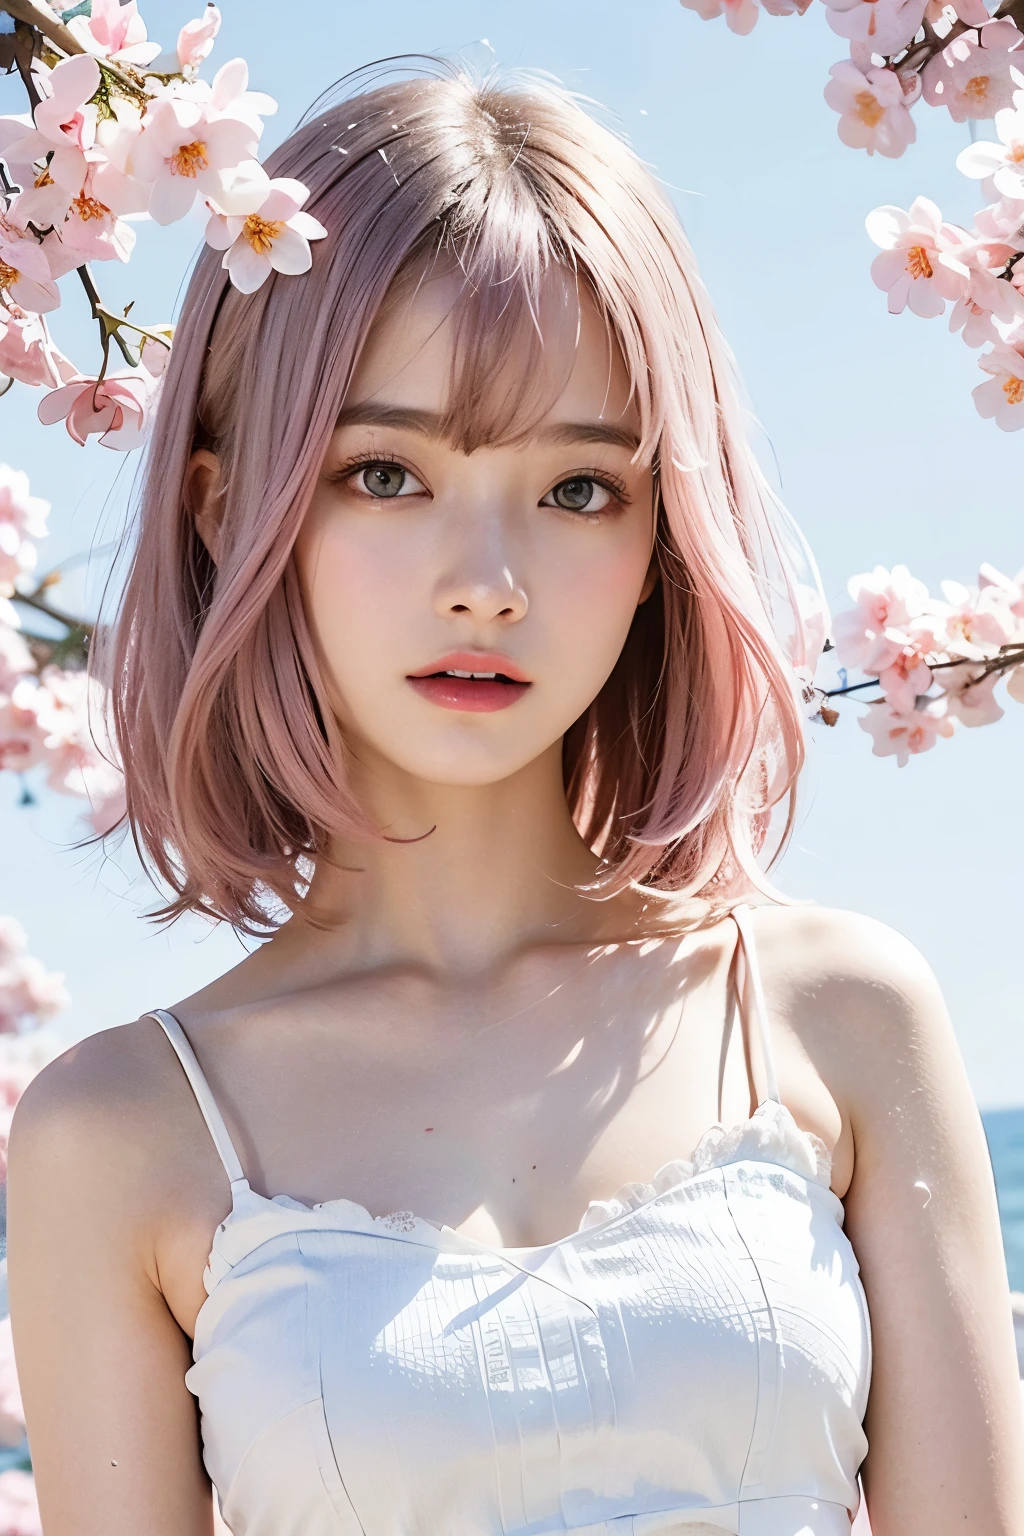 ライトピンクの髪, ピンクの目, ピンクと白, 桜の葉, 鮮やかな色彩, 白いドレス, ペイントスプラッシュ, シンプルな背景, レイトレーシング, ウェーブのかかった髪